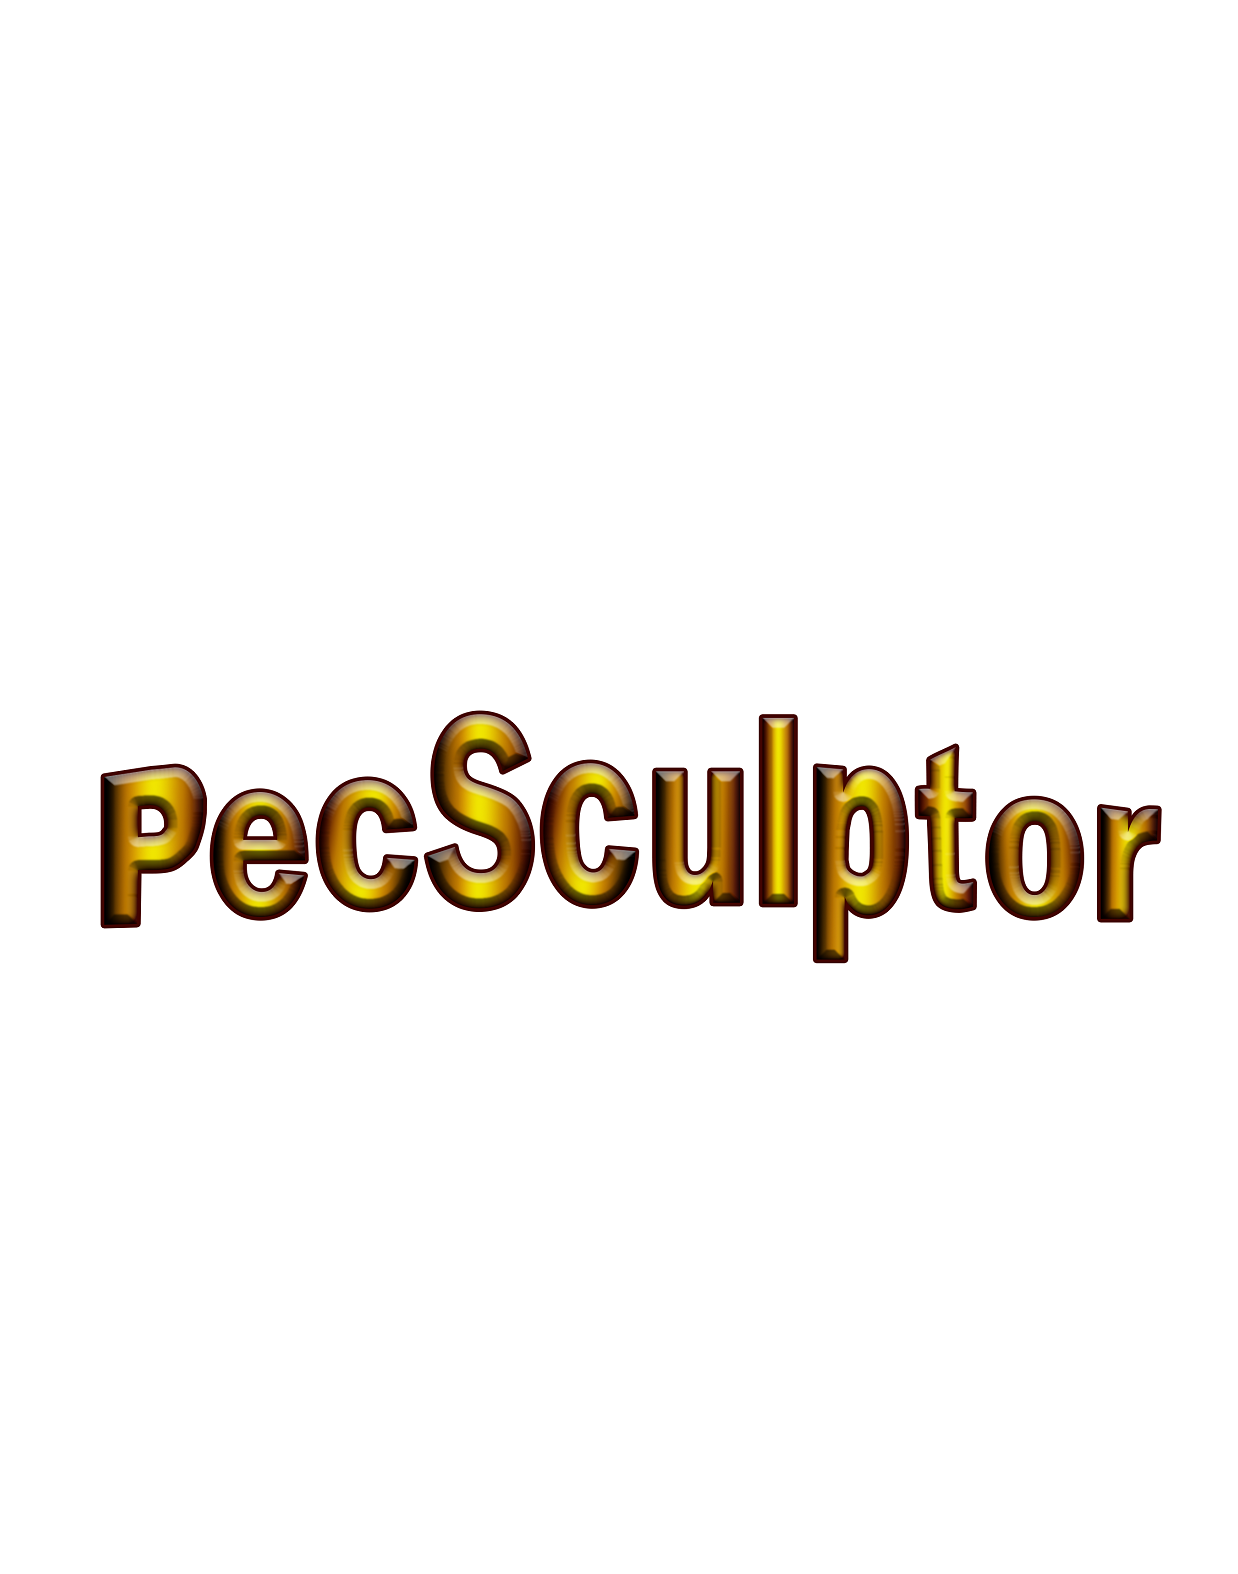 Pec Sculptor Graphic Art Logo Image